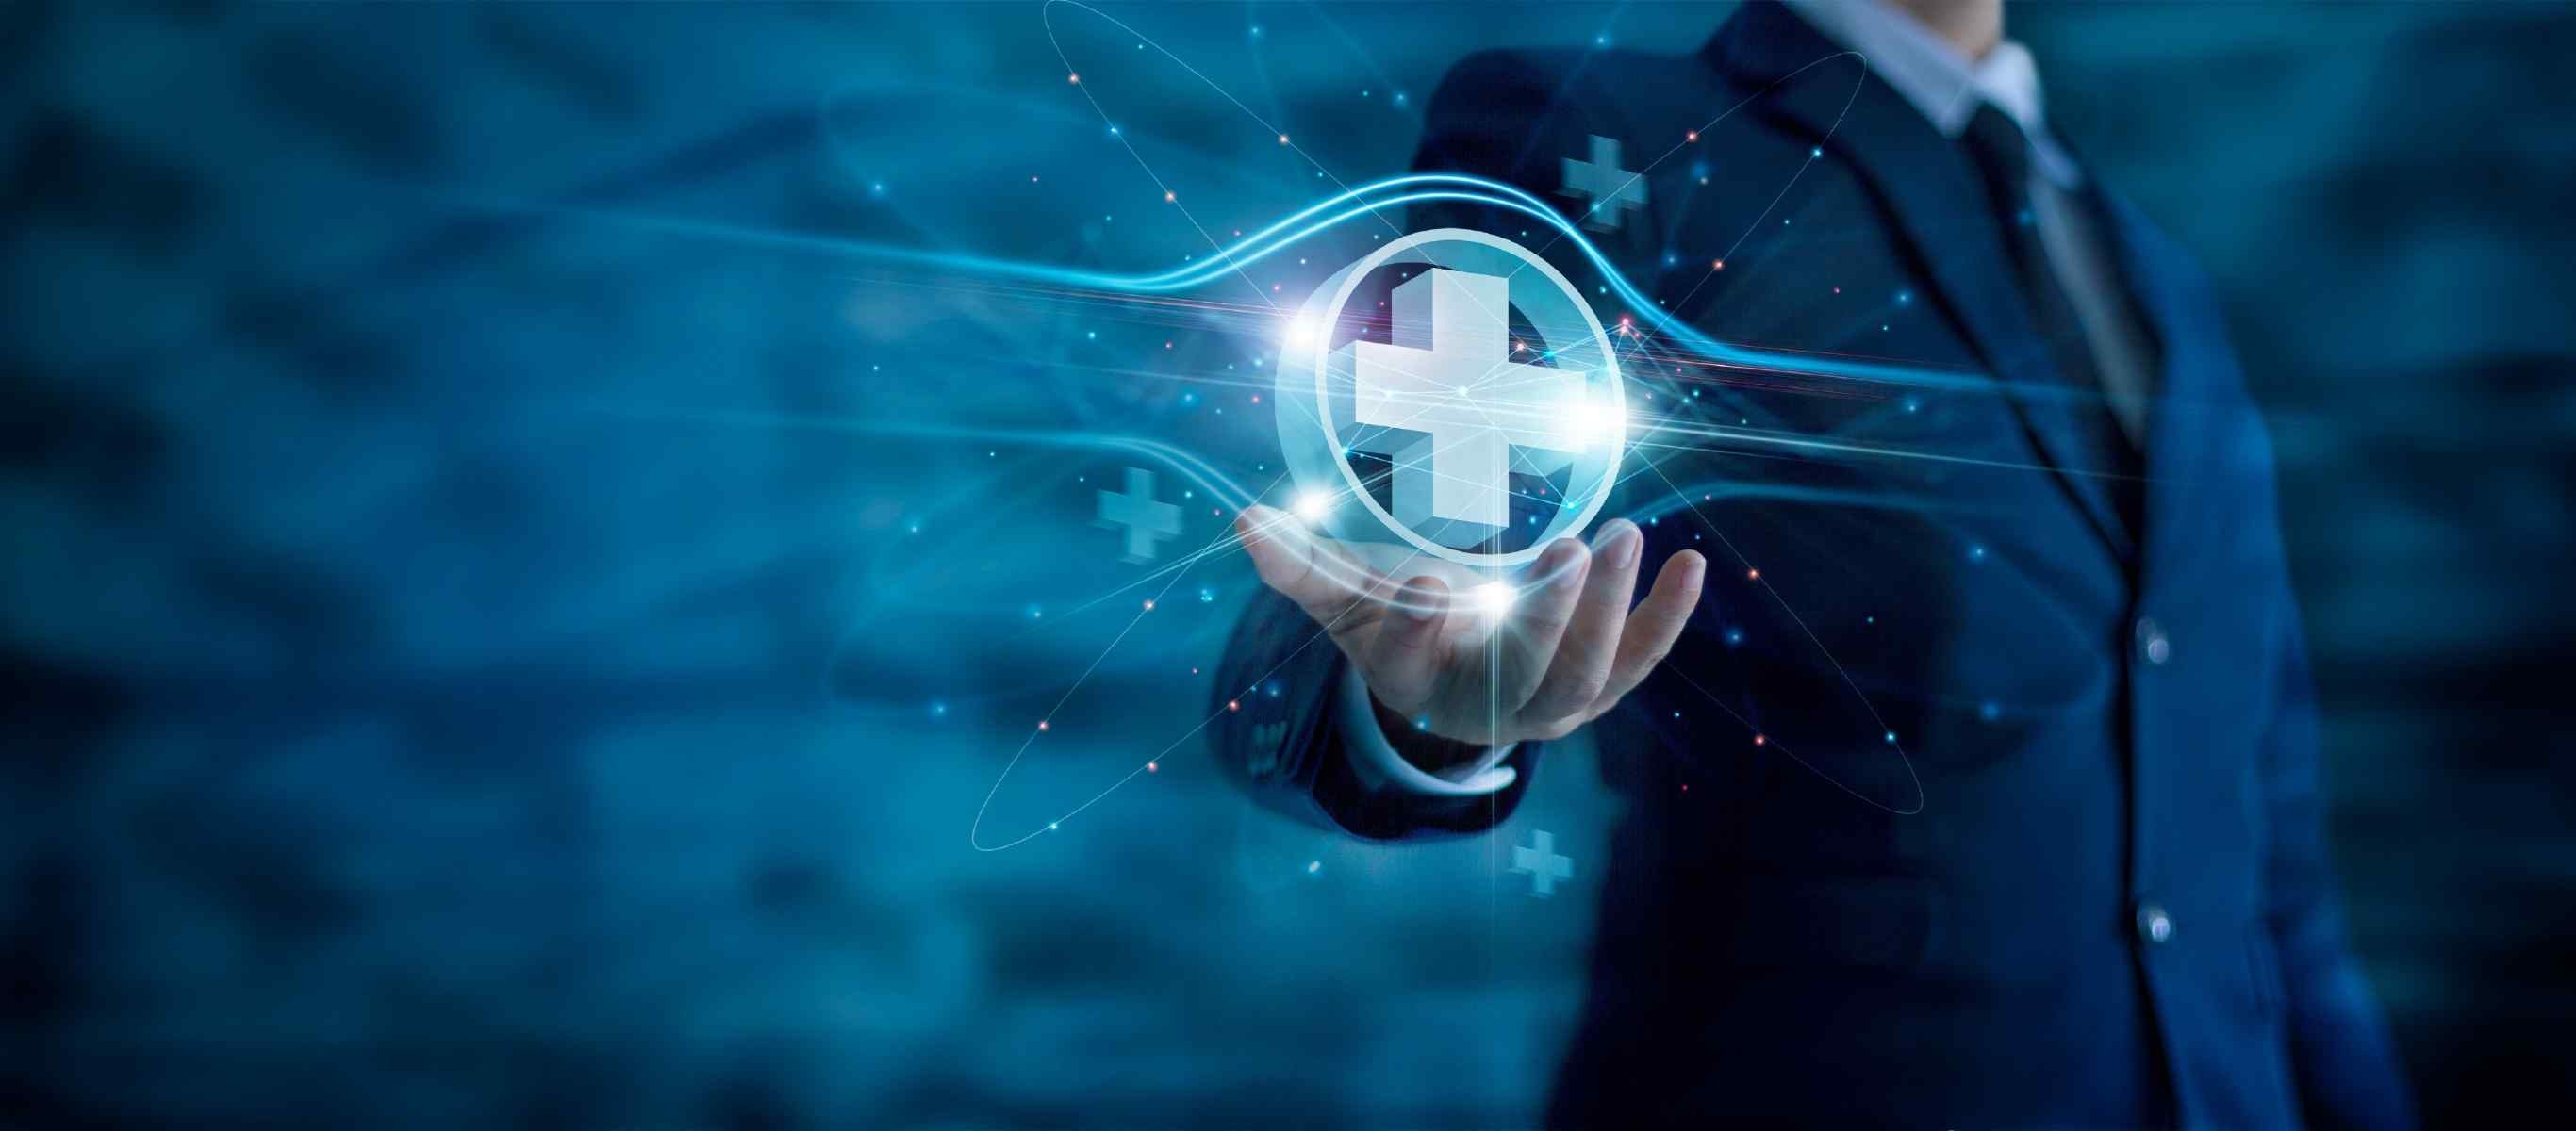 The Digital Pathway to Widespread Precision Medicine